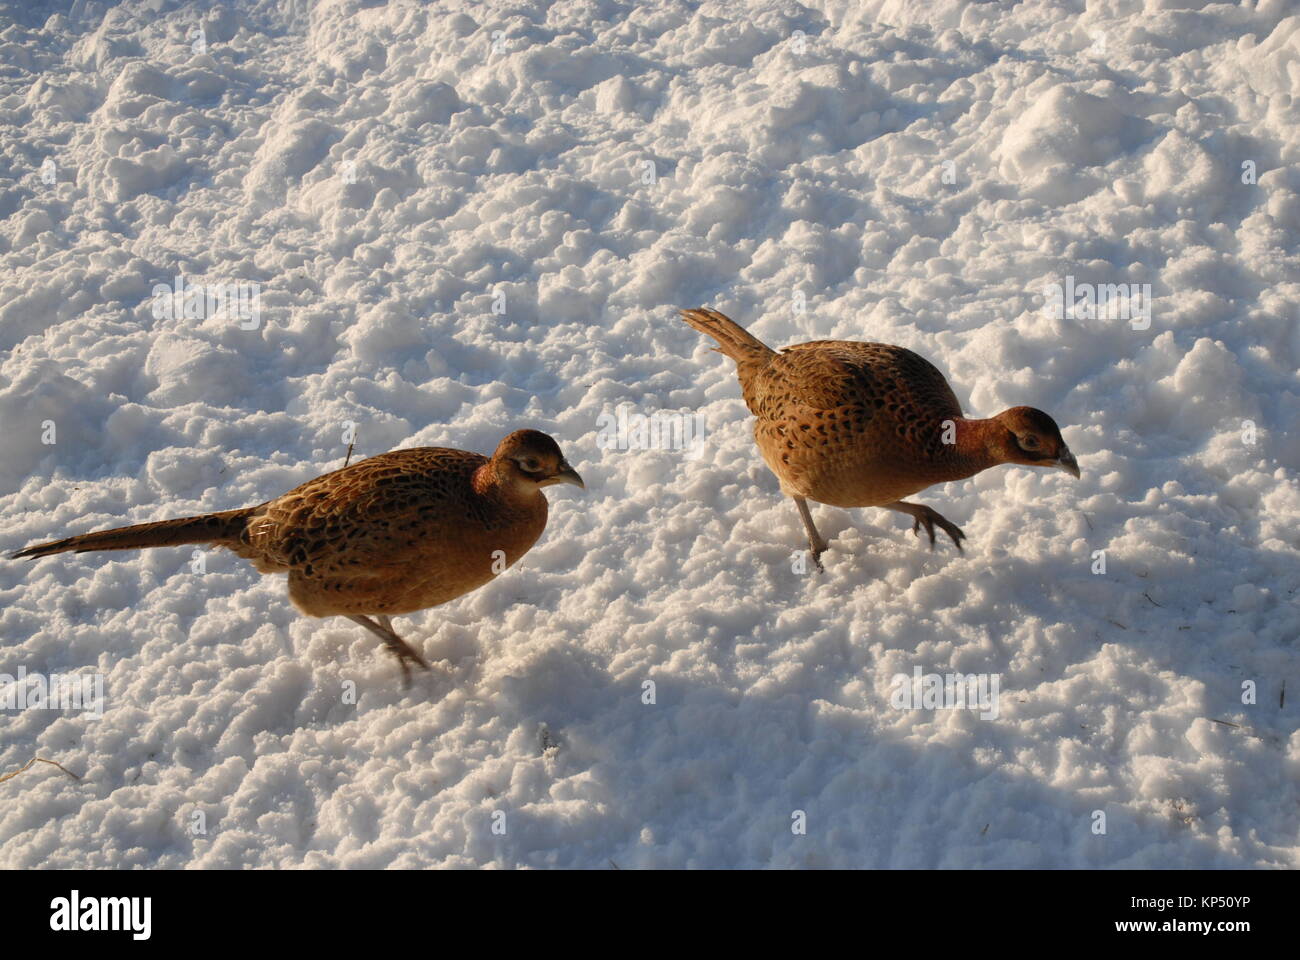 Pheasants in Snow Stock Photo